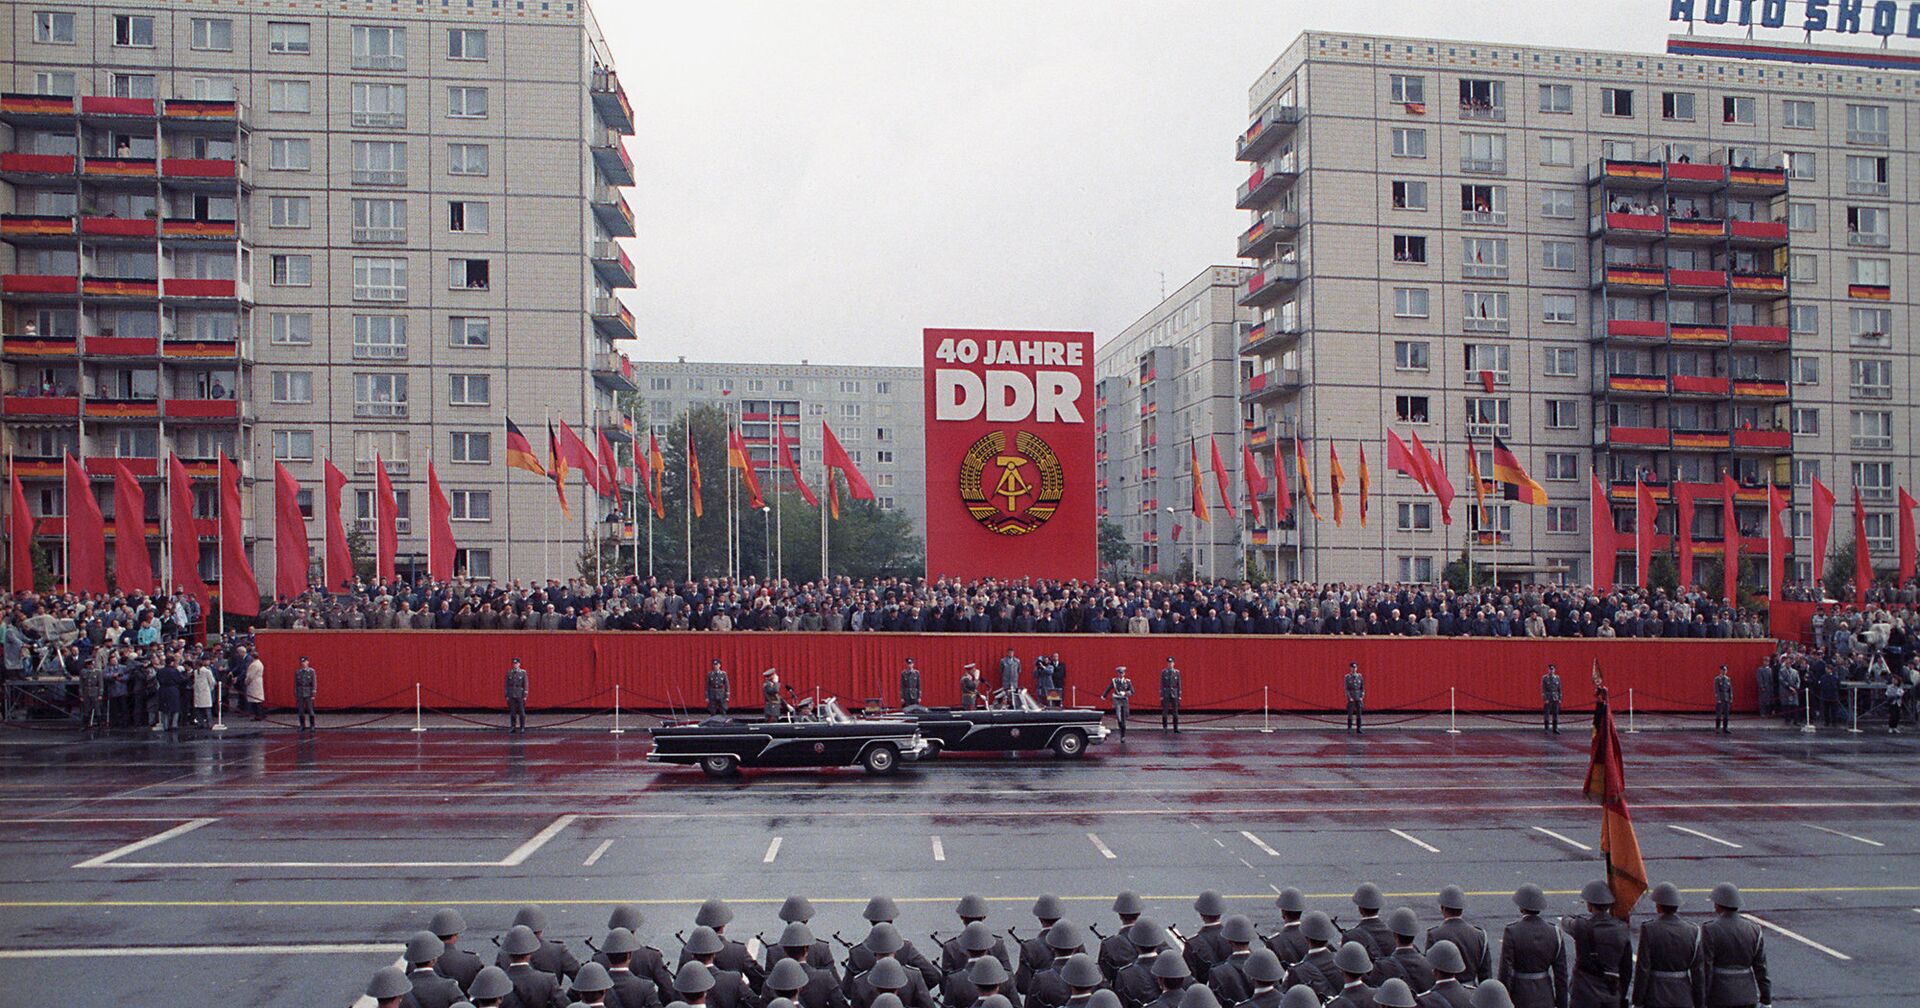 Военный парад в честь 40-летия образования Германской Демократической Республики - ИноСМИ, 1920, 06.10.2020